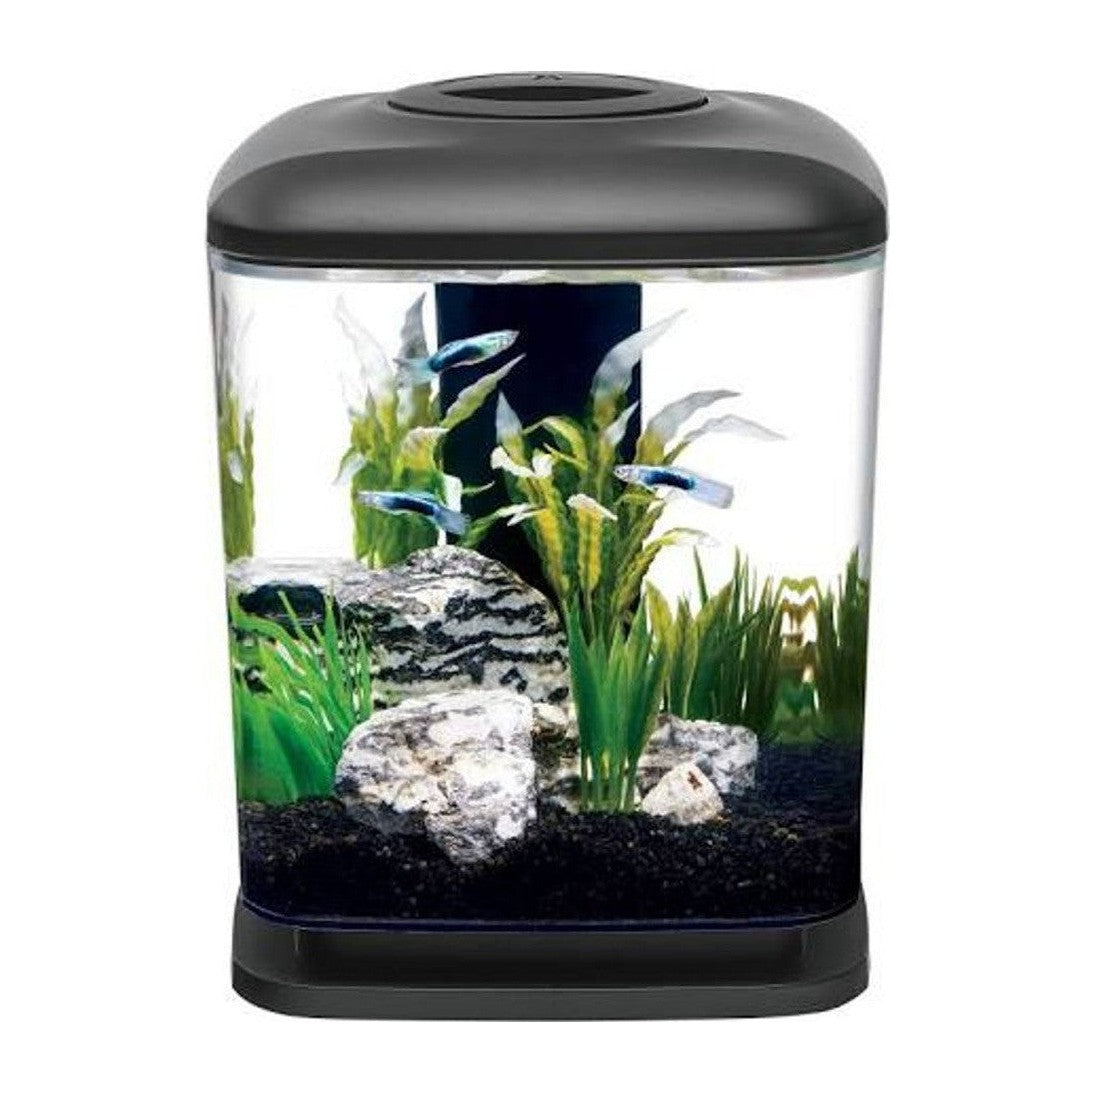 Aqueon Mini Cube Desktop Aquarium Kit 1.6 Gallon